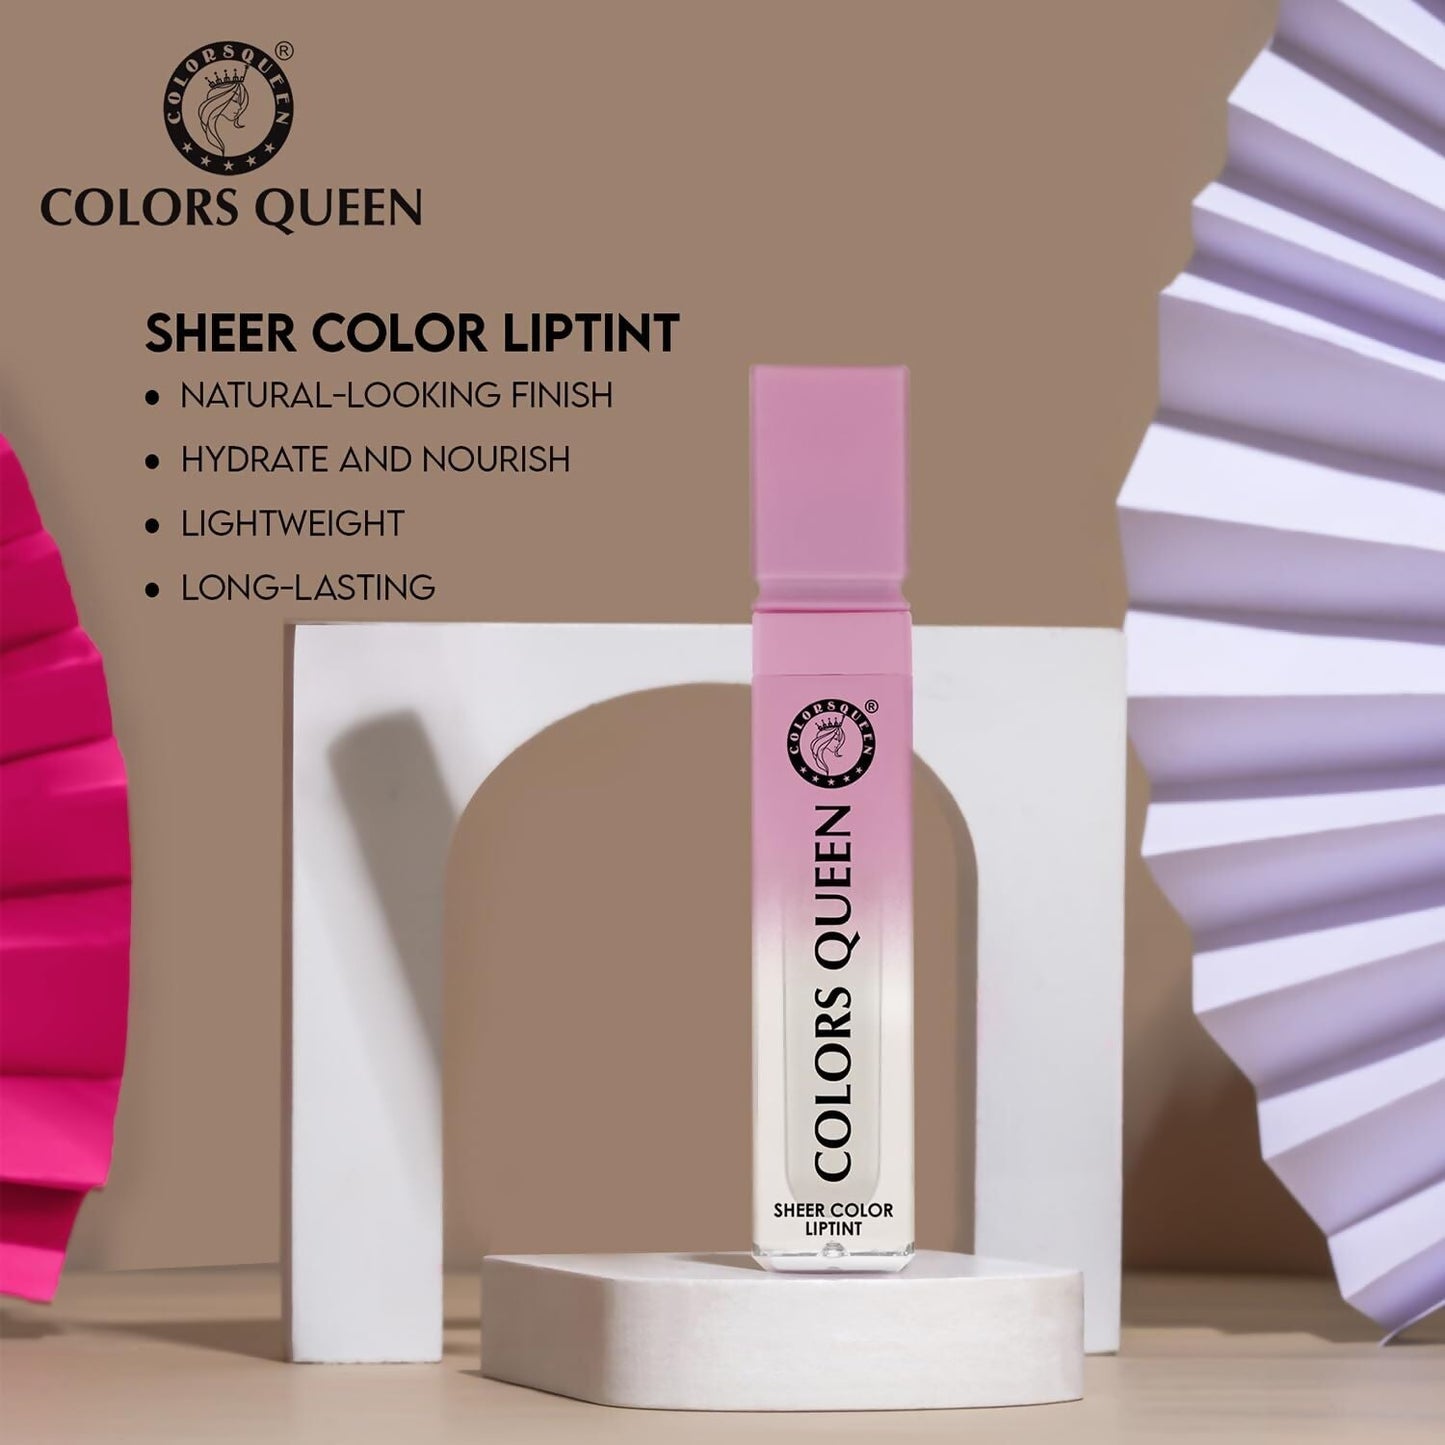 Colors Queen Sheer Color Liquid Lip Tint